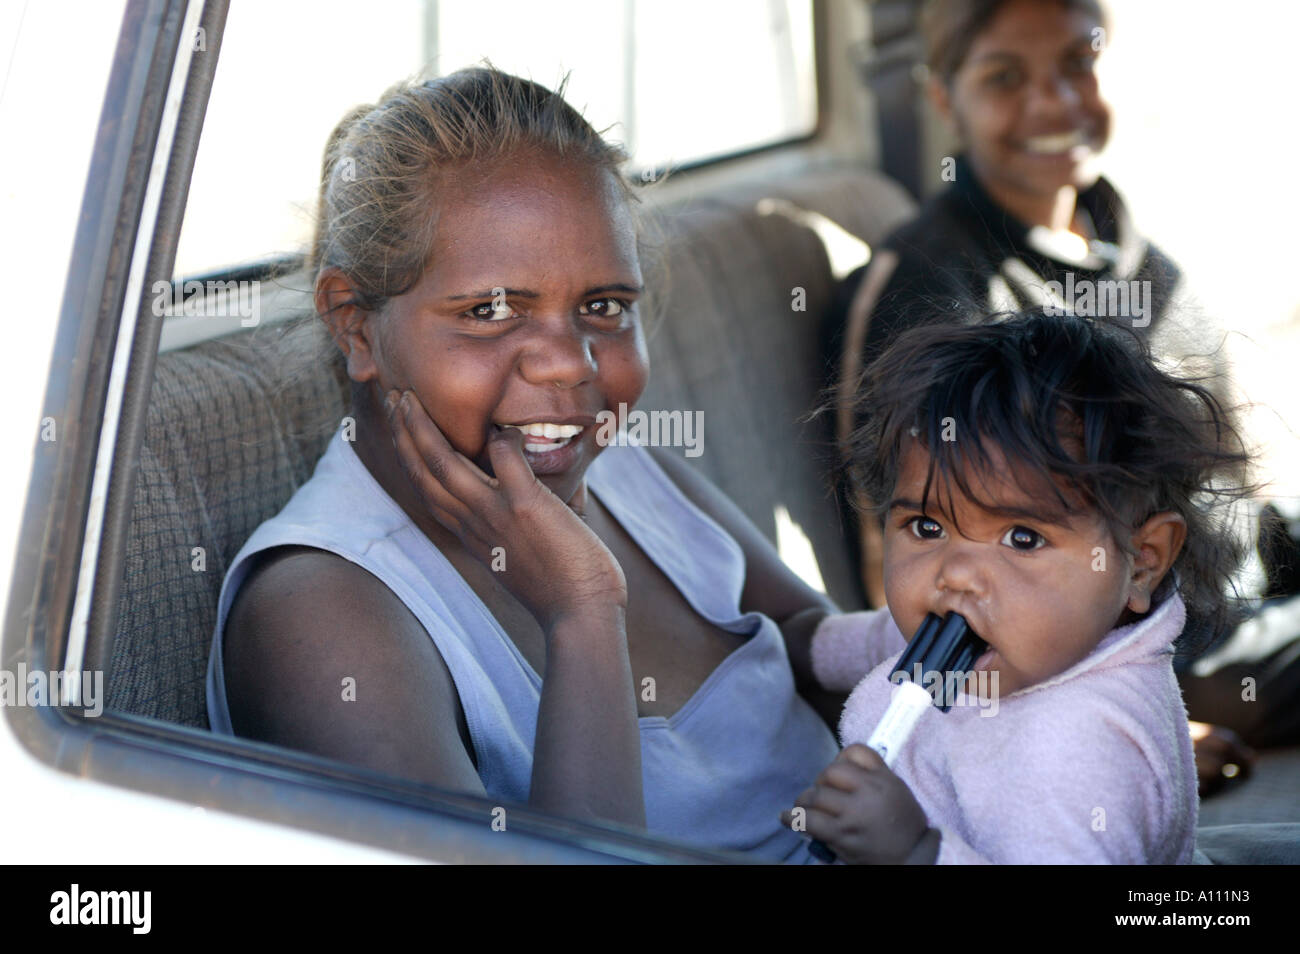 An aboriginal woman and her baby Anangu Pitjantjara lands South Australia Stock Photo